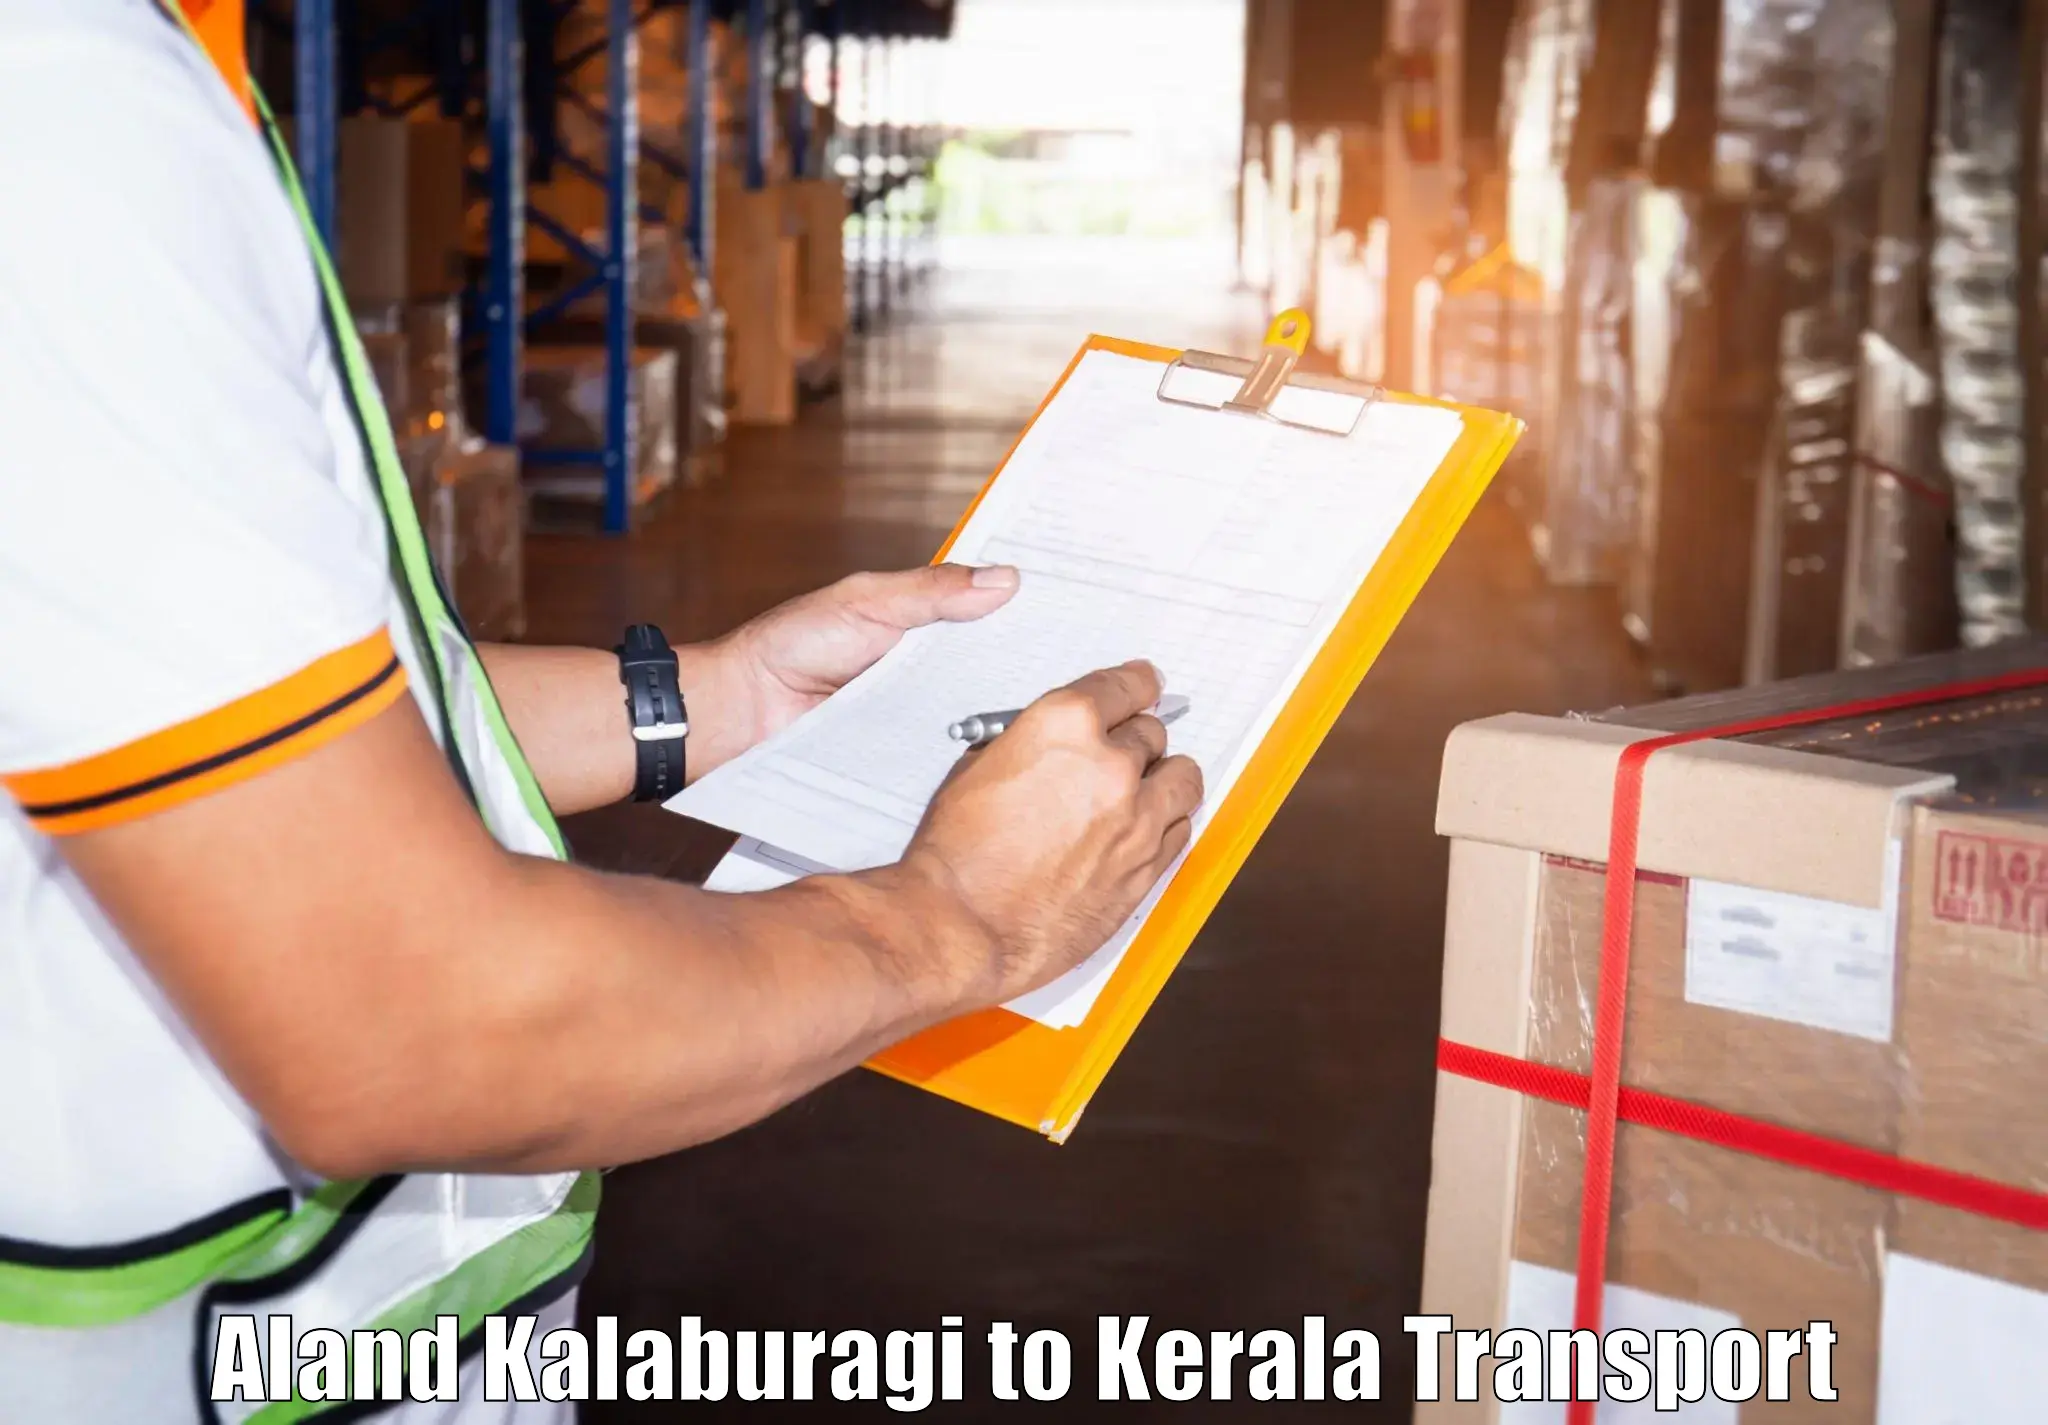 Daily parcel service transport Aland Kalaburagi to Ponekkara